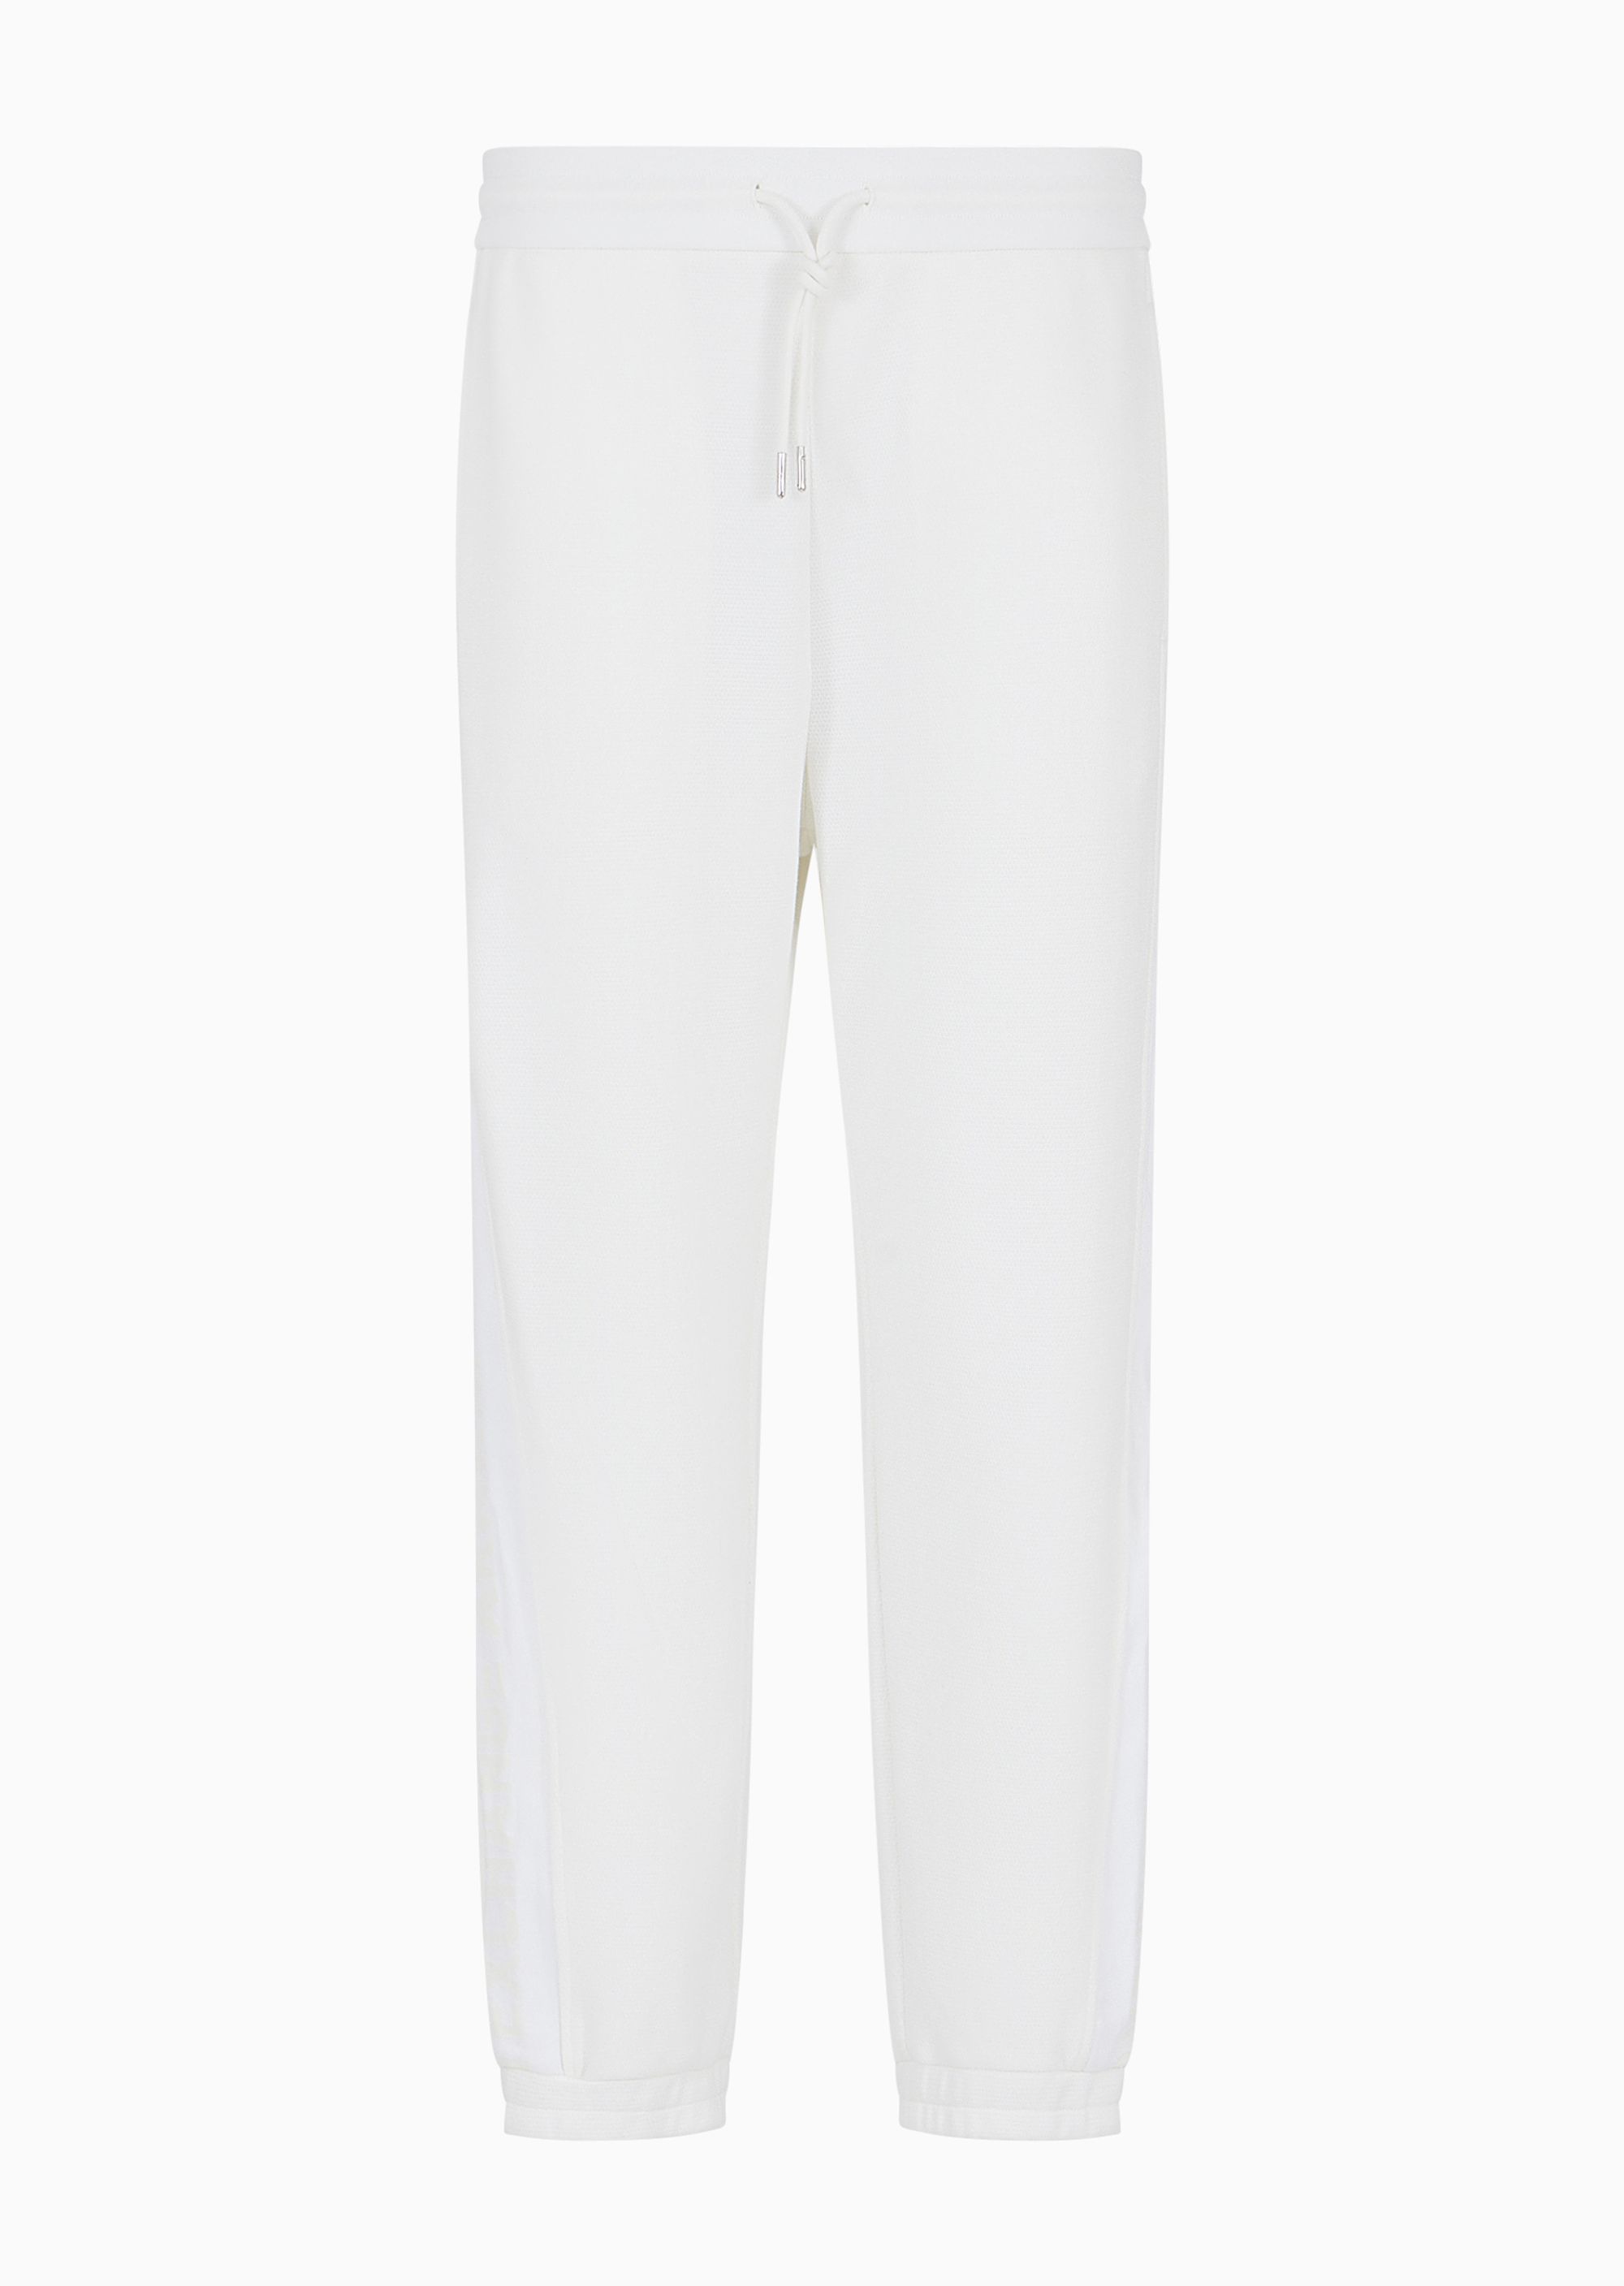 Спортивные брюки Armani Exchange, белый темно синие спортивные брюки prince edition sporty